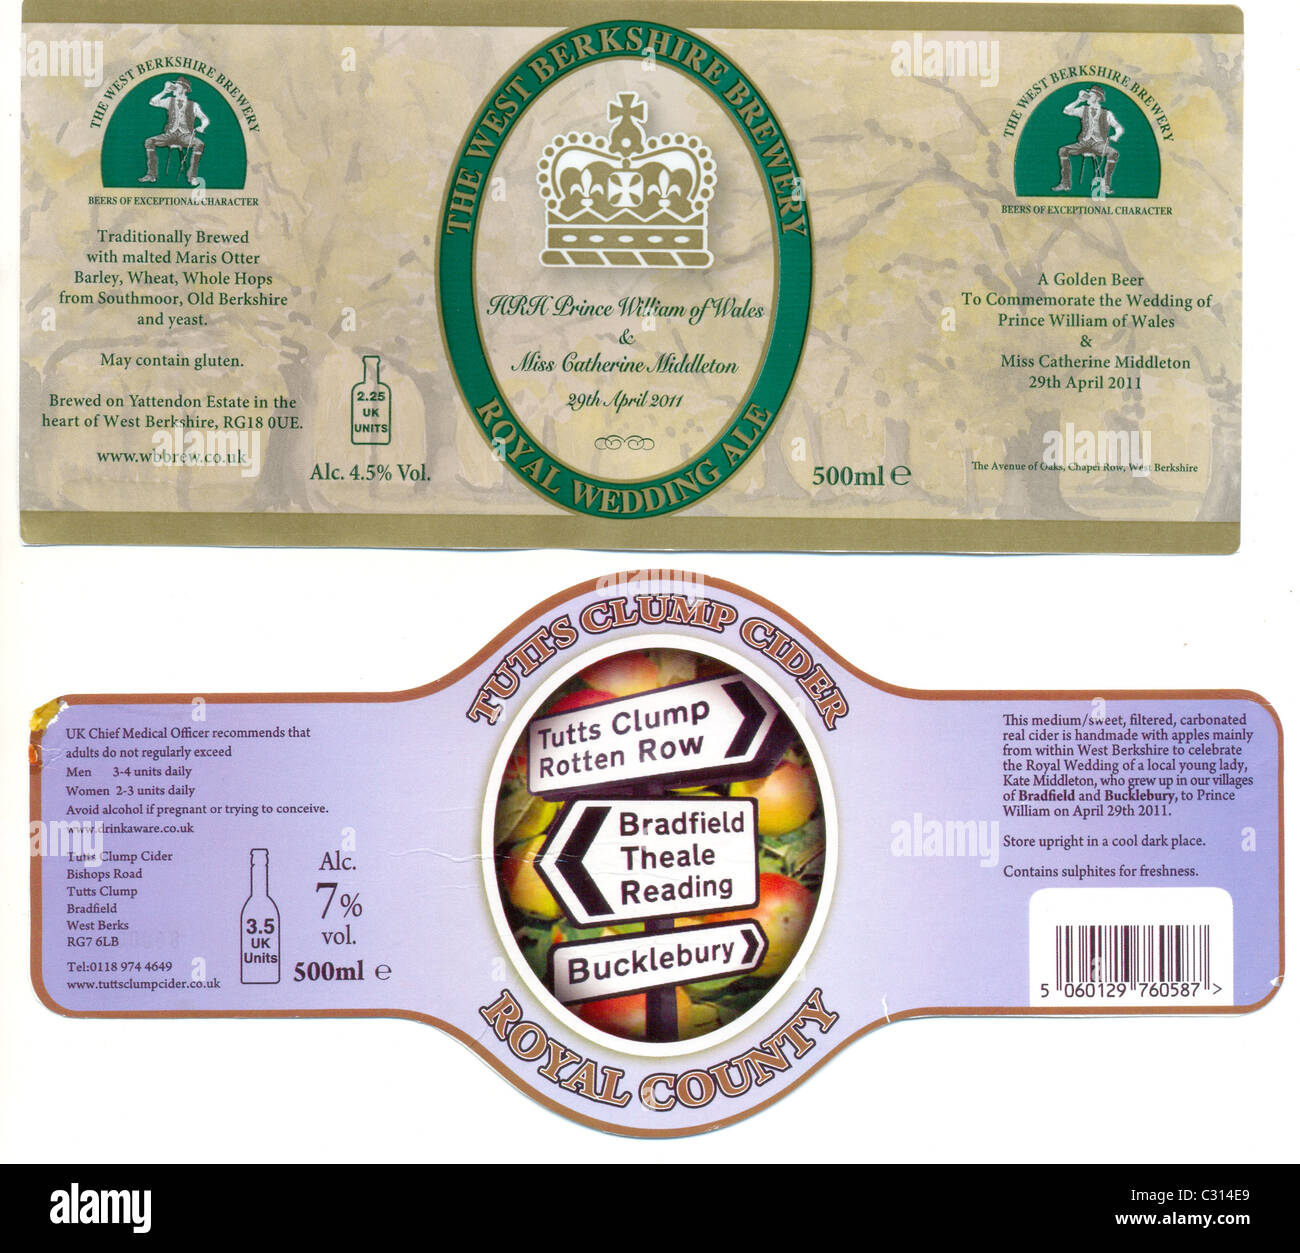 Etiketten für spezielle Berkshire Biere von Apfelwein und Ale, die königliche Hochzeit zu feiern Stockfoto